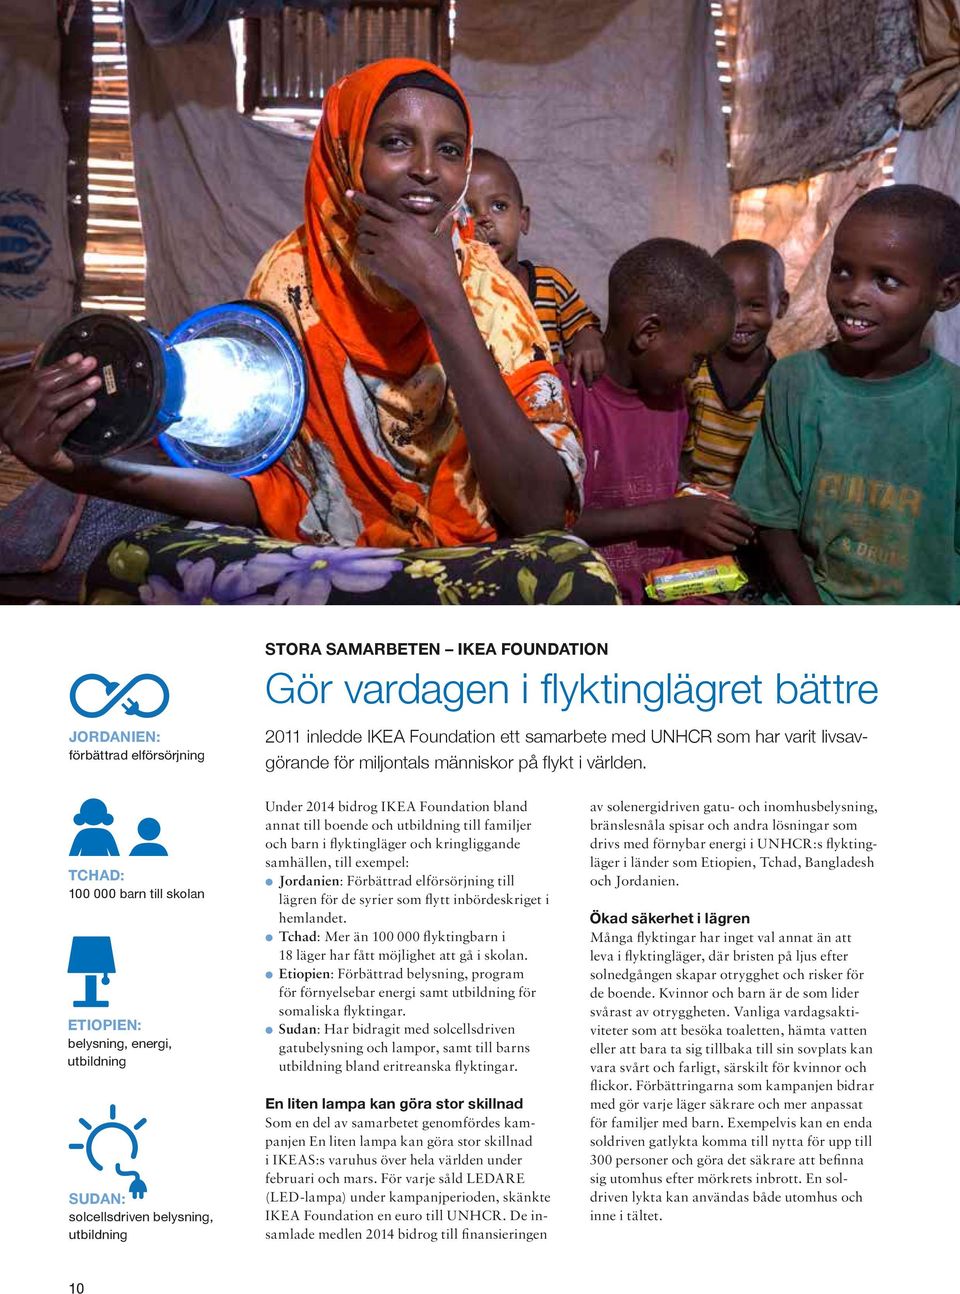 TCHAD: 100 000 barn till skolan ETIOPIEN: belysning, energi, utbildning SUDAN: solcellsdriven belysning, utbildning Under 2014 bidrog IKEA Foundation bland annat till boende och utbildning till